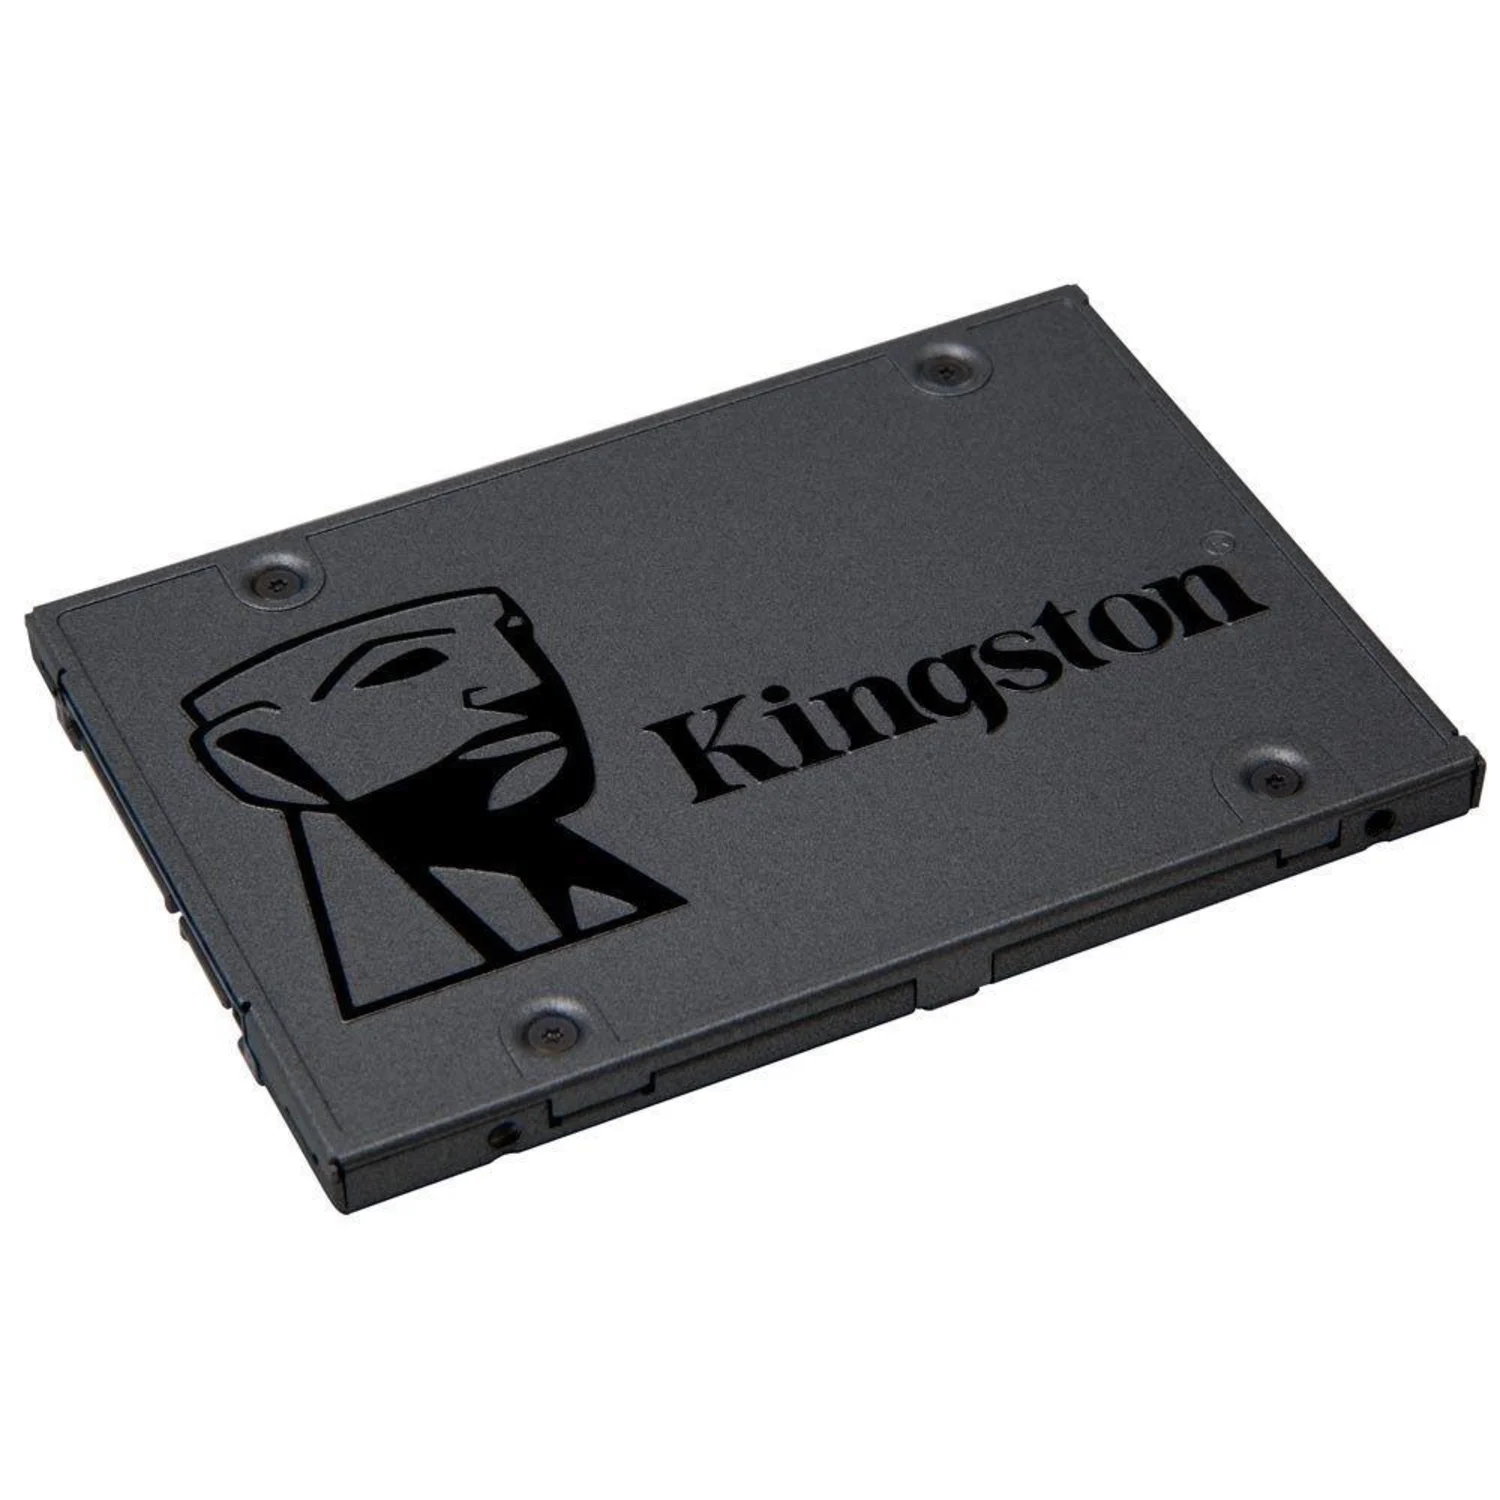 SSD Kingston A400 480GB 2.5" SATA 3 - SA400S37/480G
